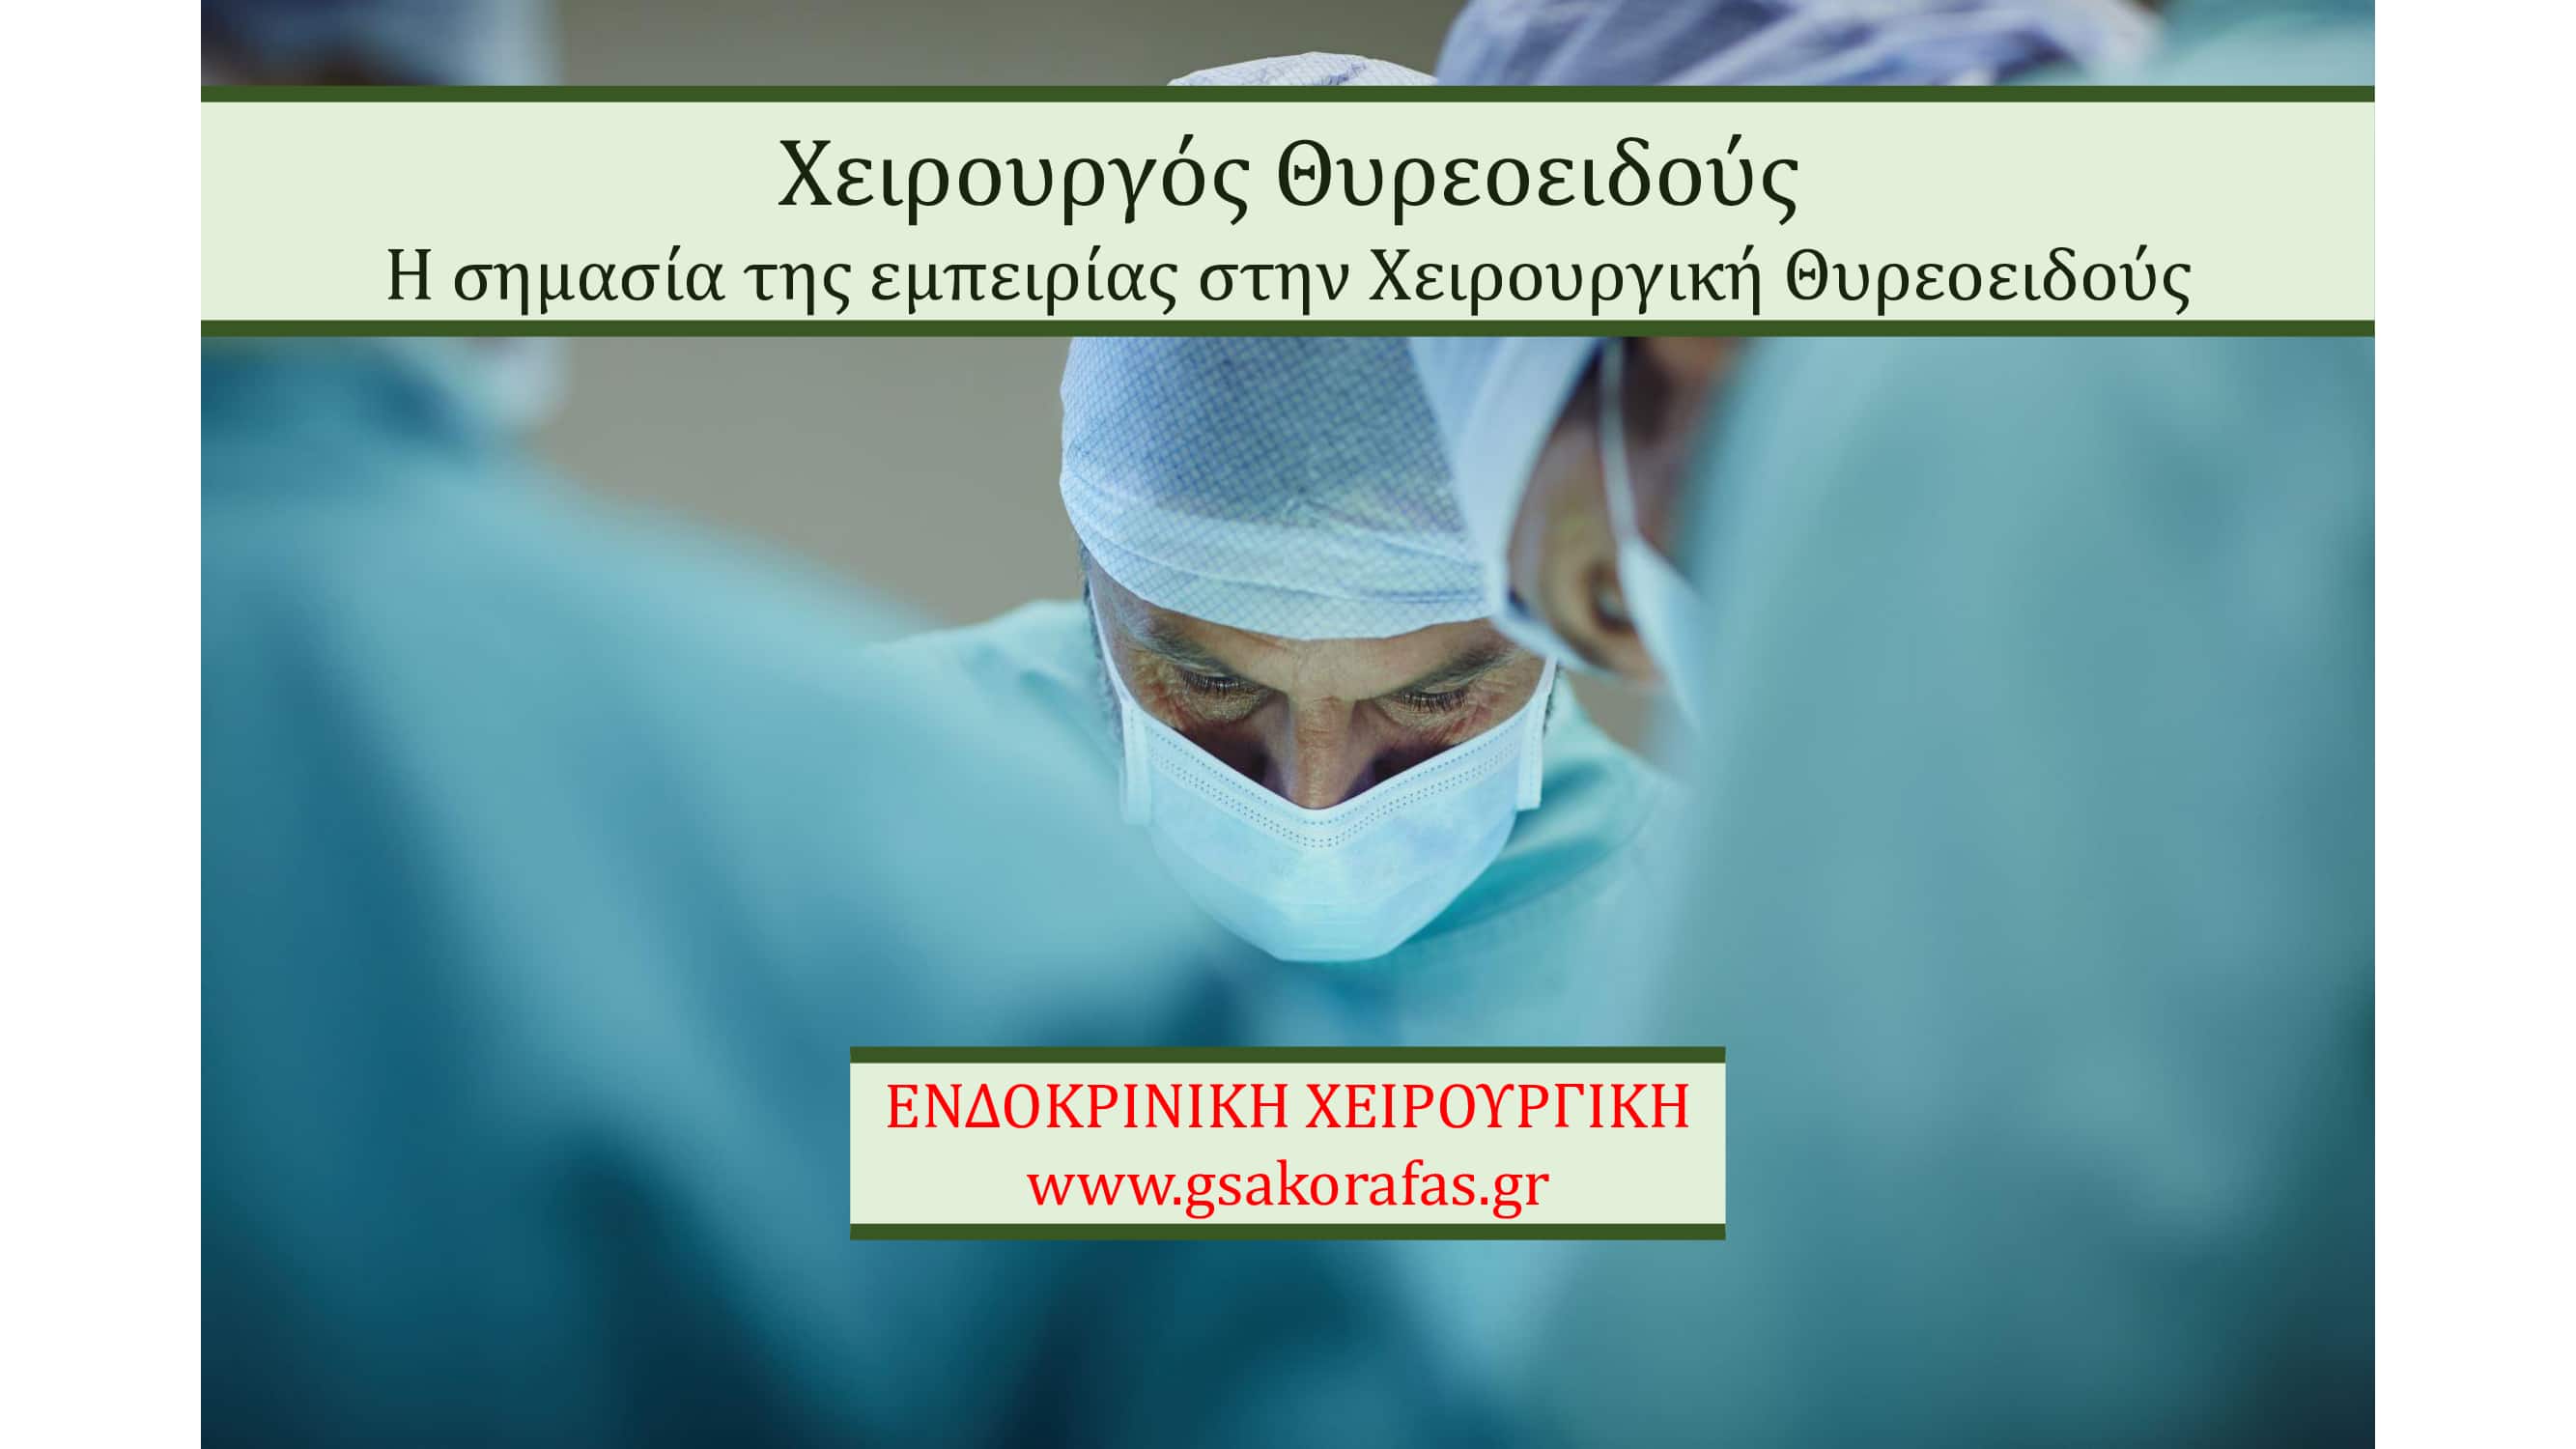 Χειρουργός Θυρεοειδούς – η σημασία της εμπειρίας στη Χειρουργική Θυρεοειδούς